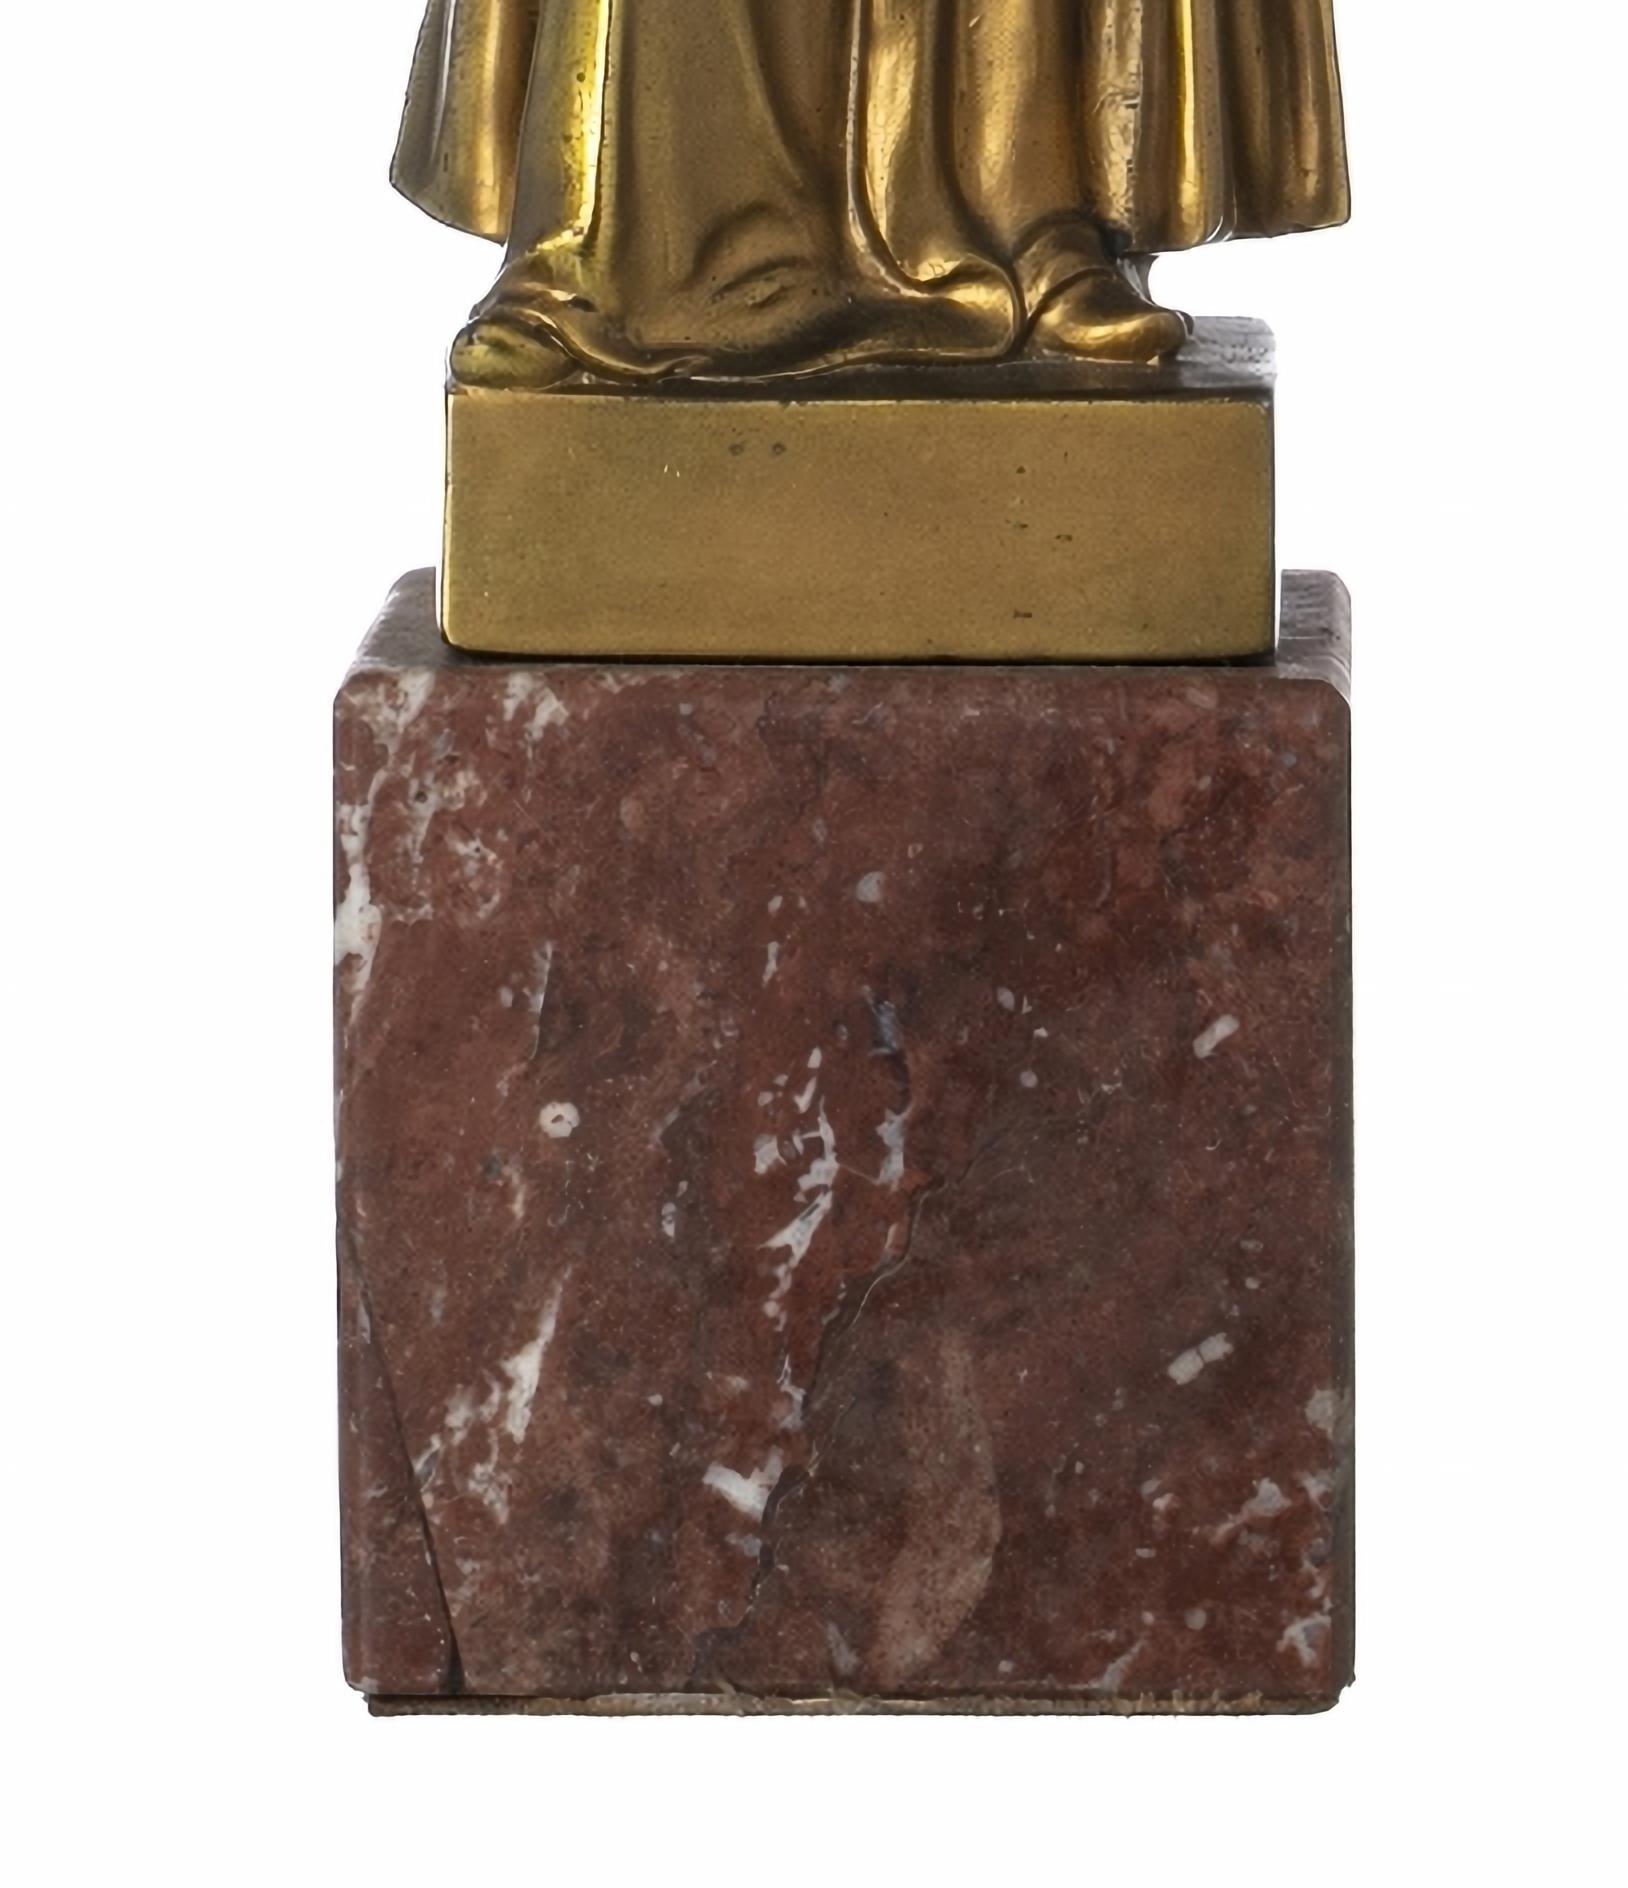 RICHARD W. Lange (1879-1944) Sculpture début 20ème siècle

Sculpture en bronze doré, avec visage et mains en bakélite.
Sur un socle en marbre.
Signé et daté 1914.
Hauteur : 33 cm.
bonnes conditions

Richard W. Lange est un artiste allemand né en